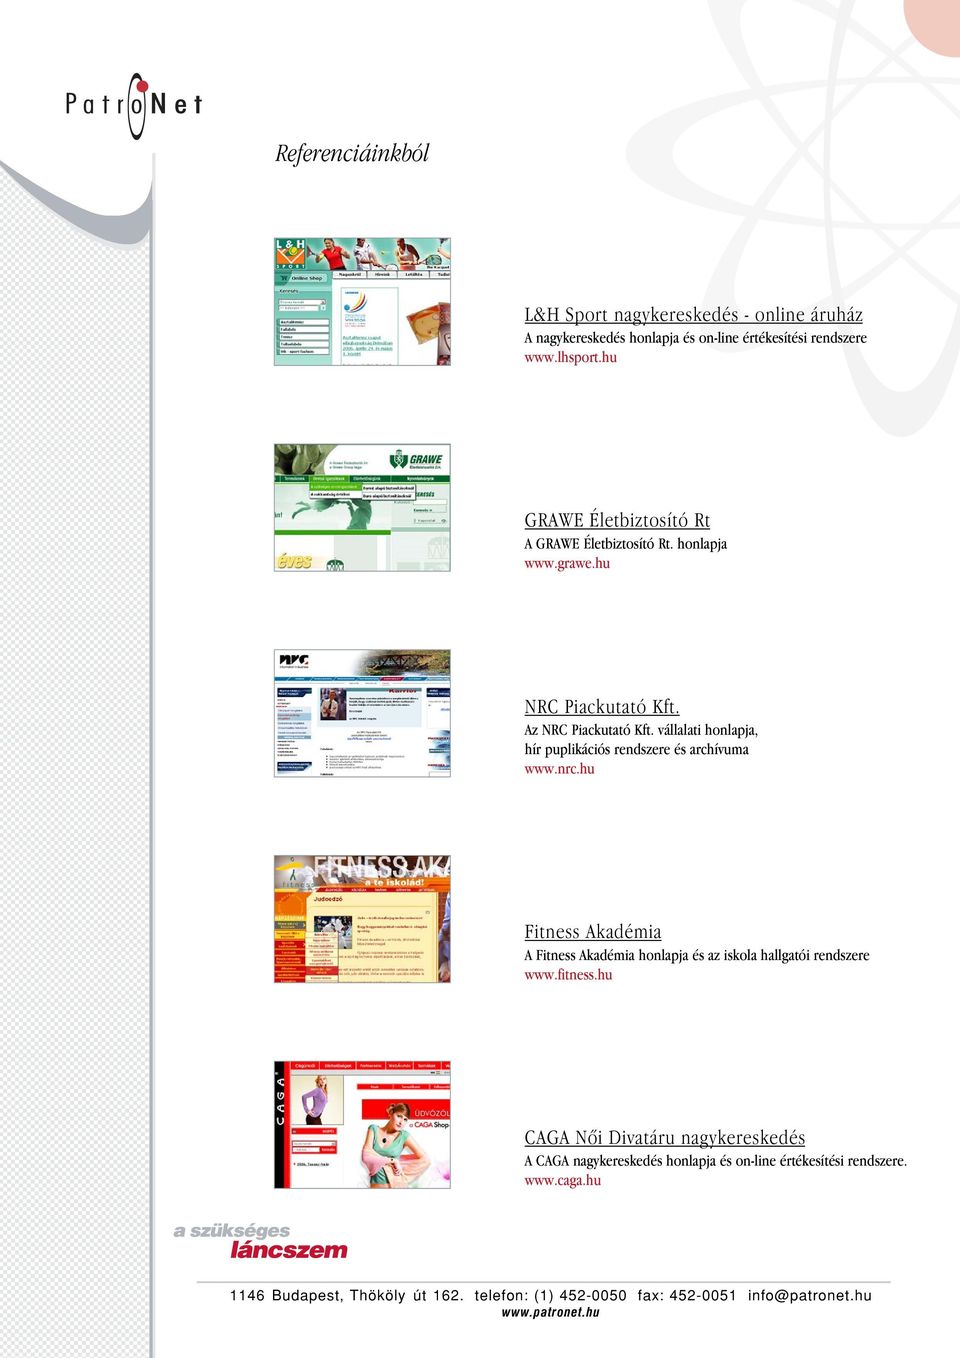 vállalati honlapja, hír puplikációs rendszere és archívuma www.nrc.